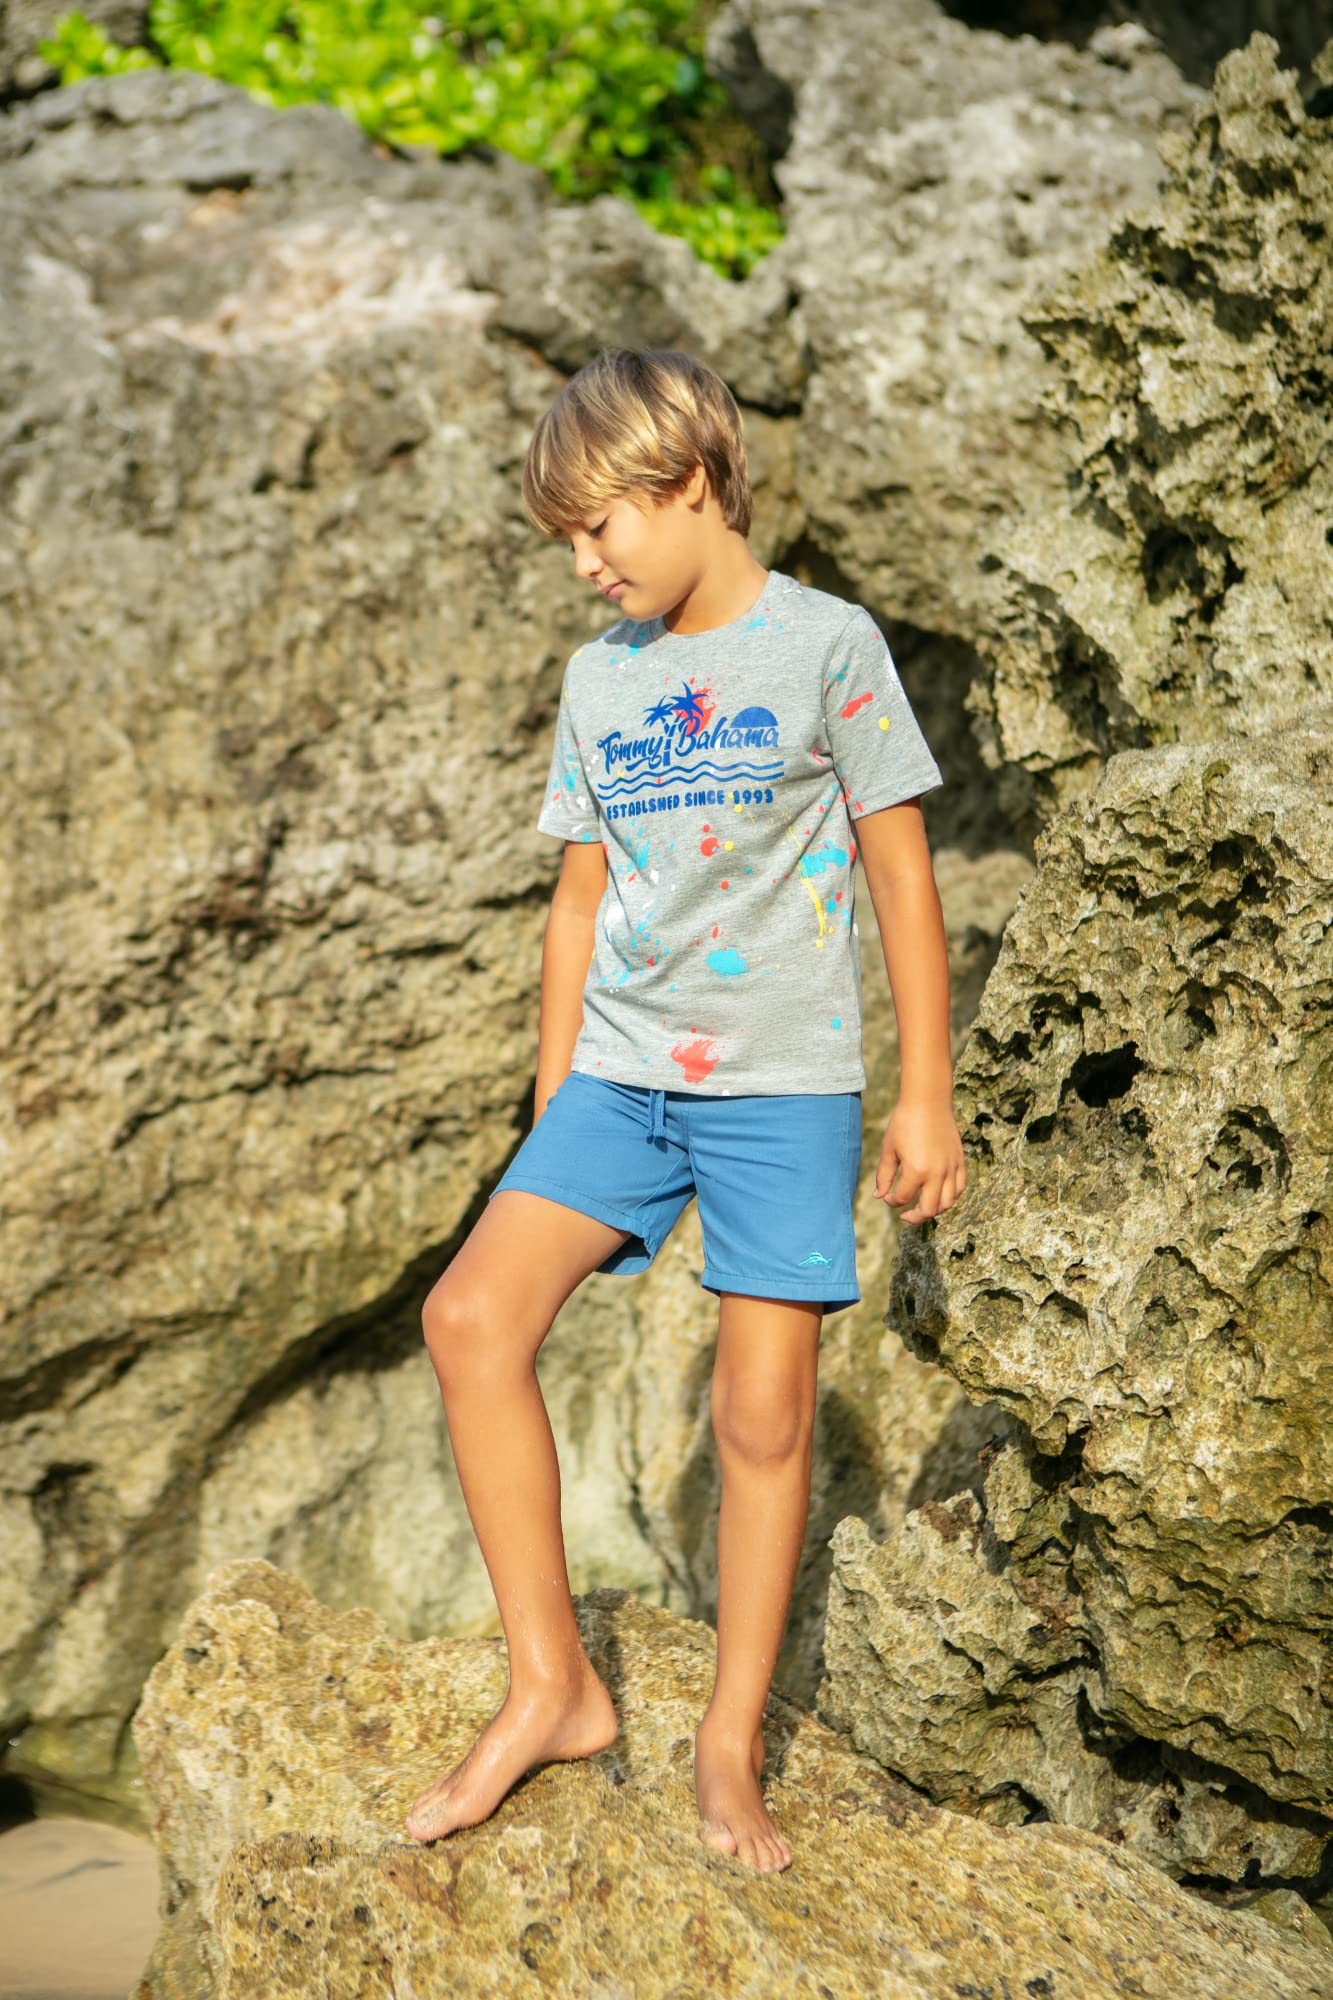 Tommy Bahama Boys 2-Piece Kids Clothing Set - Short Sleeve T-shirt